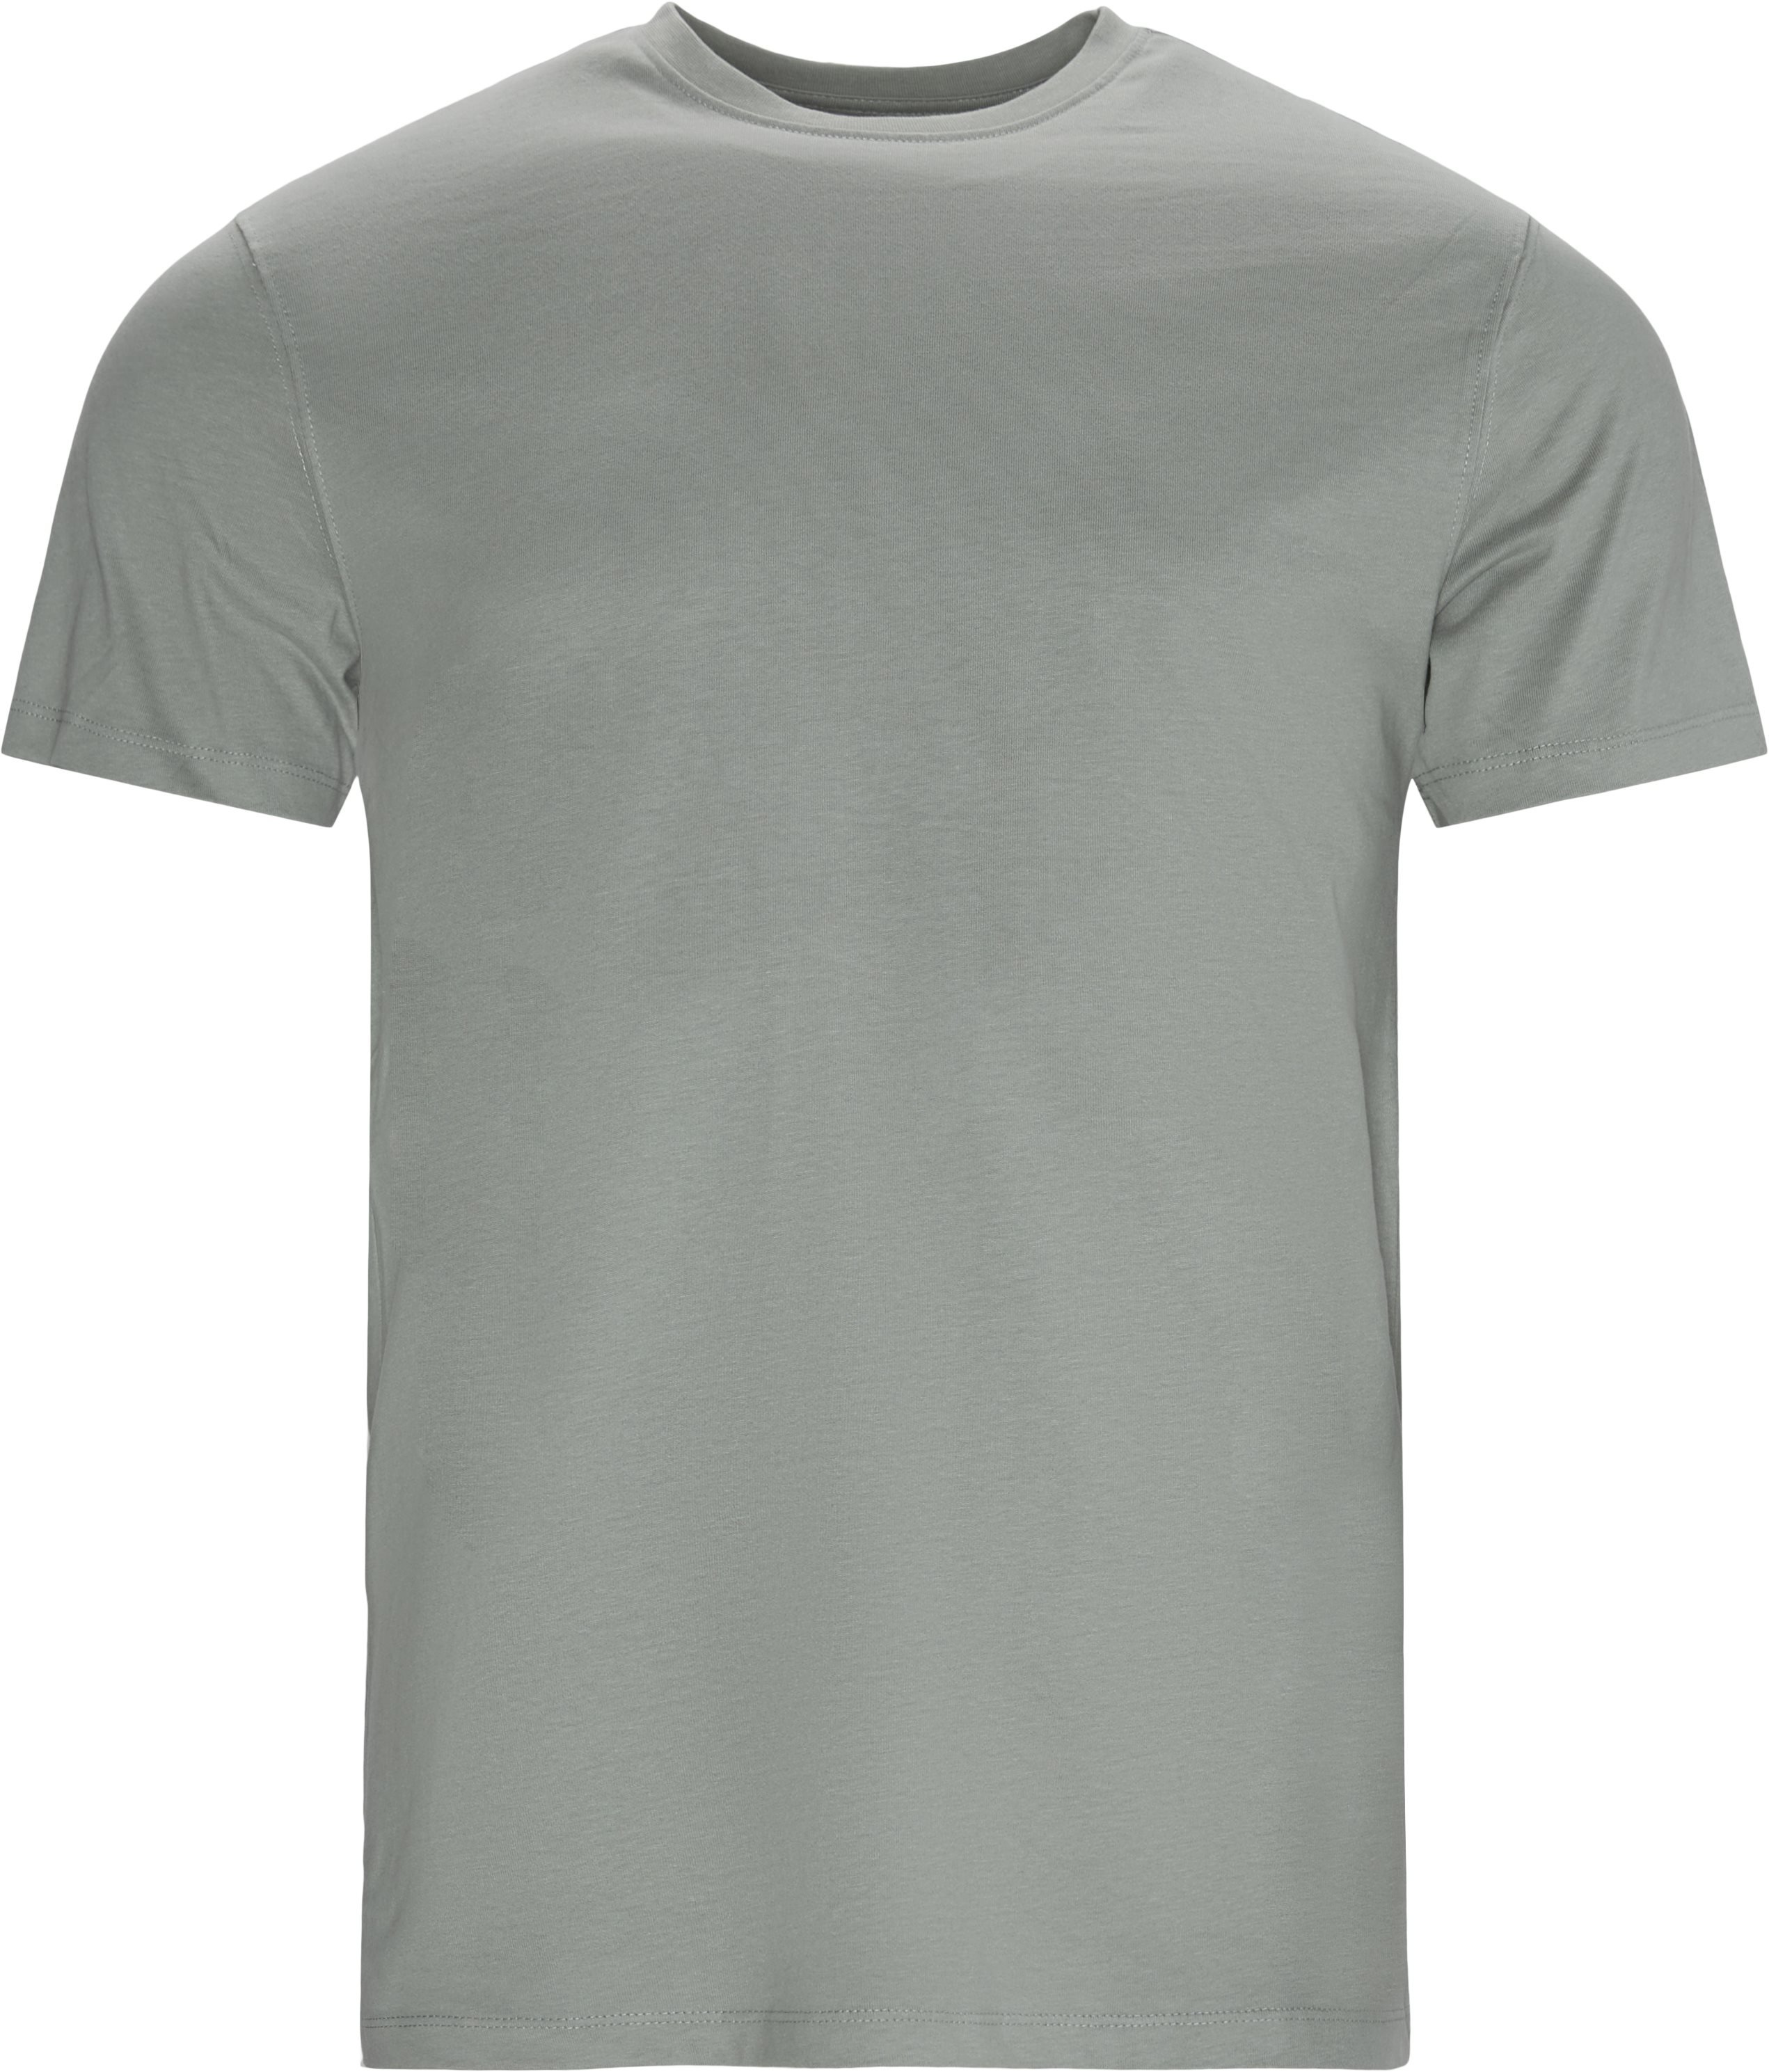 Brandon T -shirt med rund hals - T-shirts - Regular fit - Blå